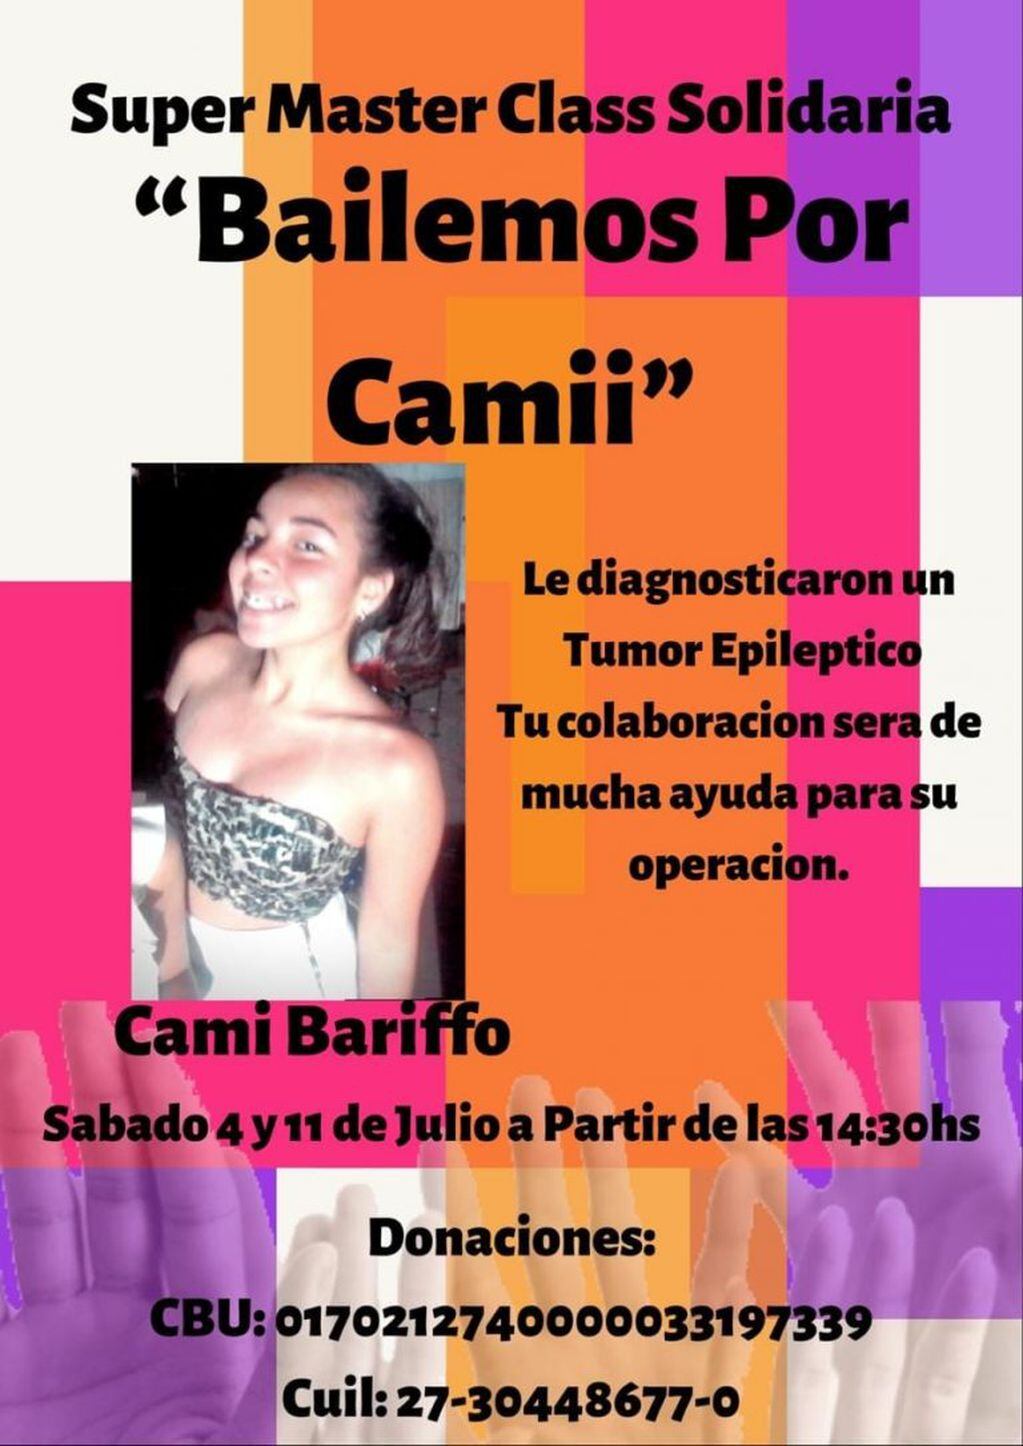 Camila Bariffo necesita recaudar un millón
Crédito: Facebook